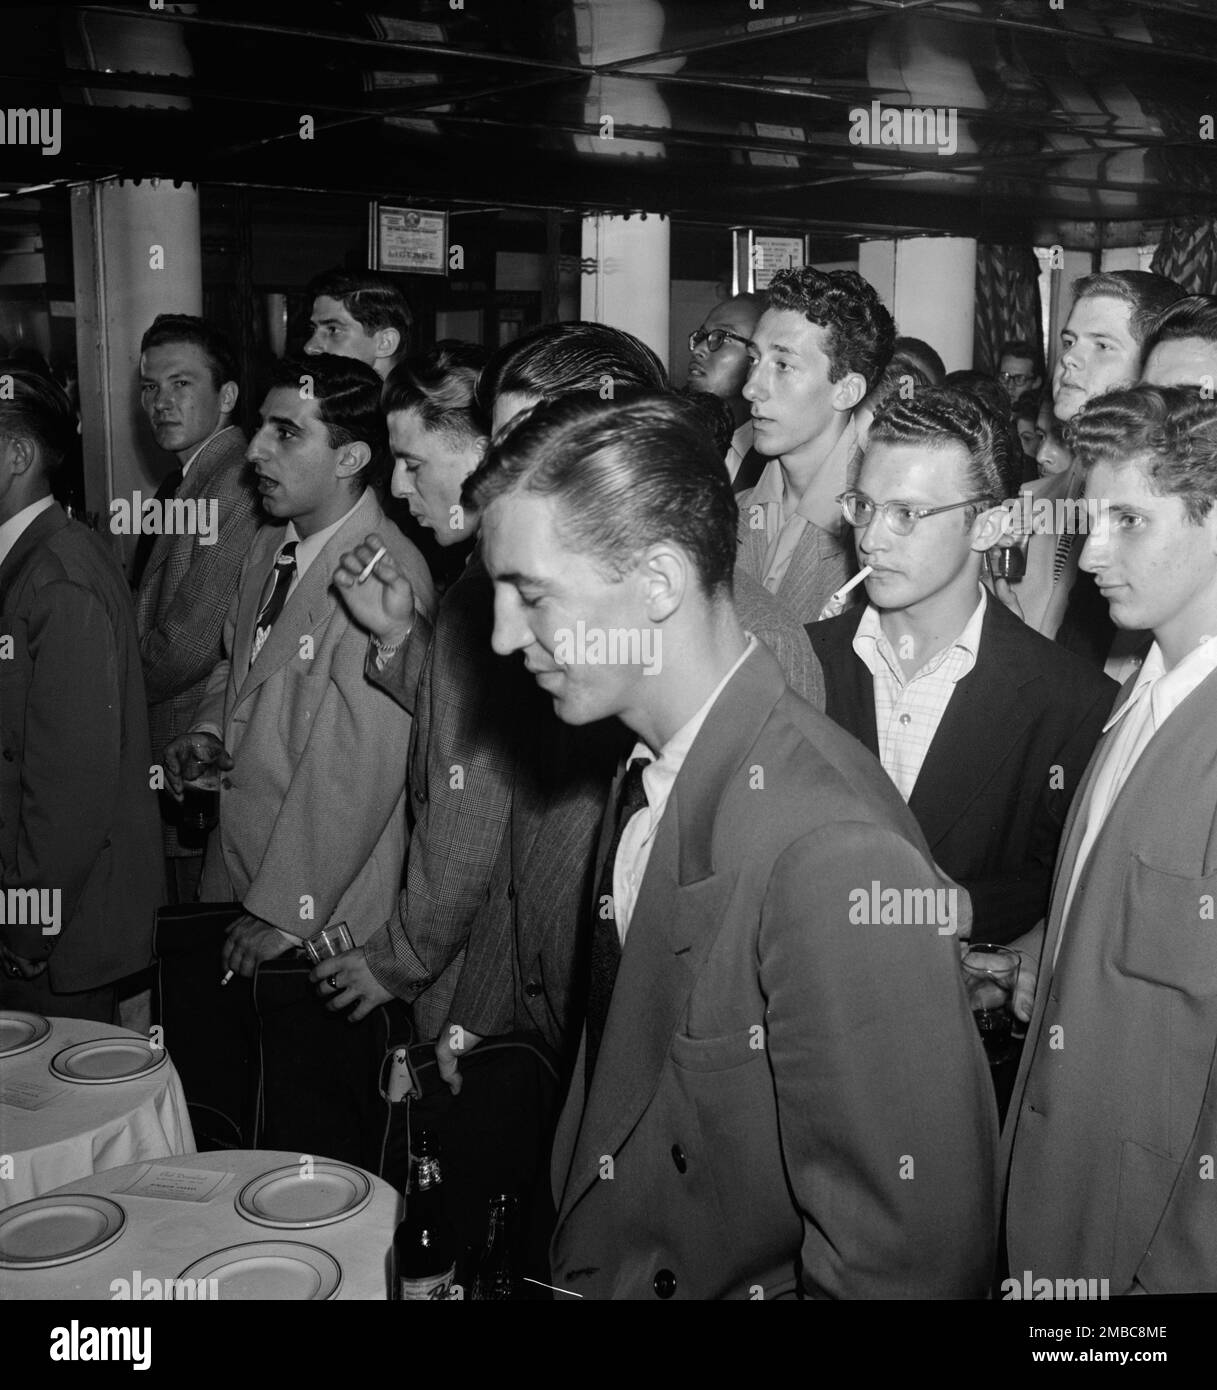 Downbeat, New York, New York, New York, Ca. 1948. Stockfoto